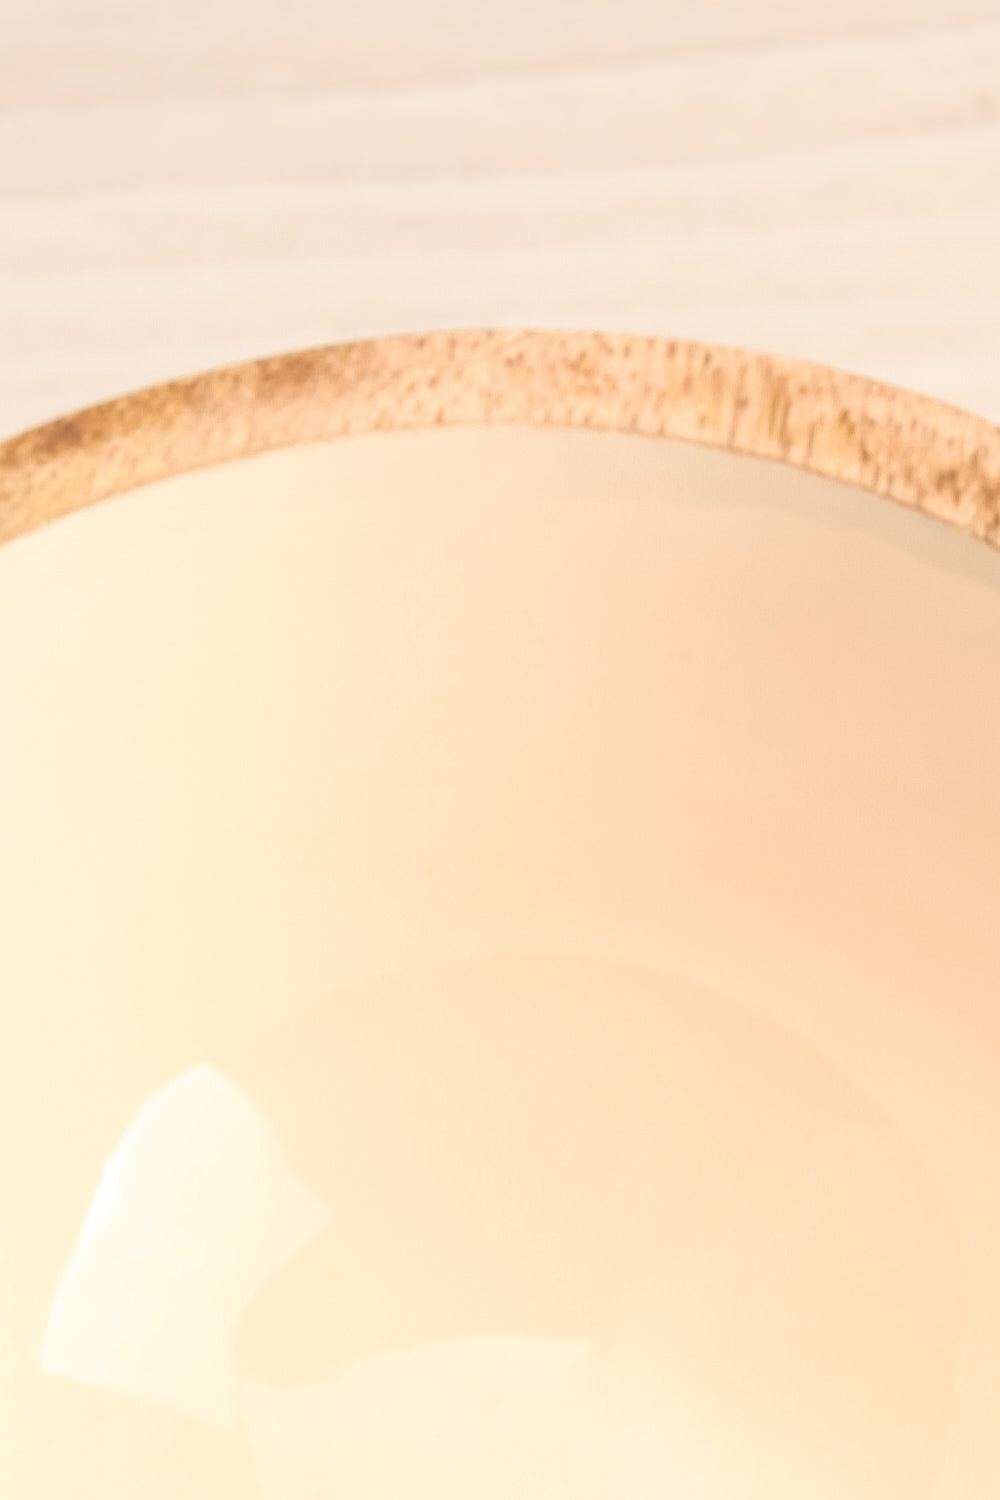 Avola Lys Decorative Wooden Bowl | La Petite Garçonne Chpt. 2 inside close-up